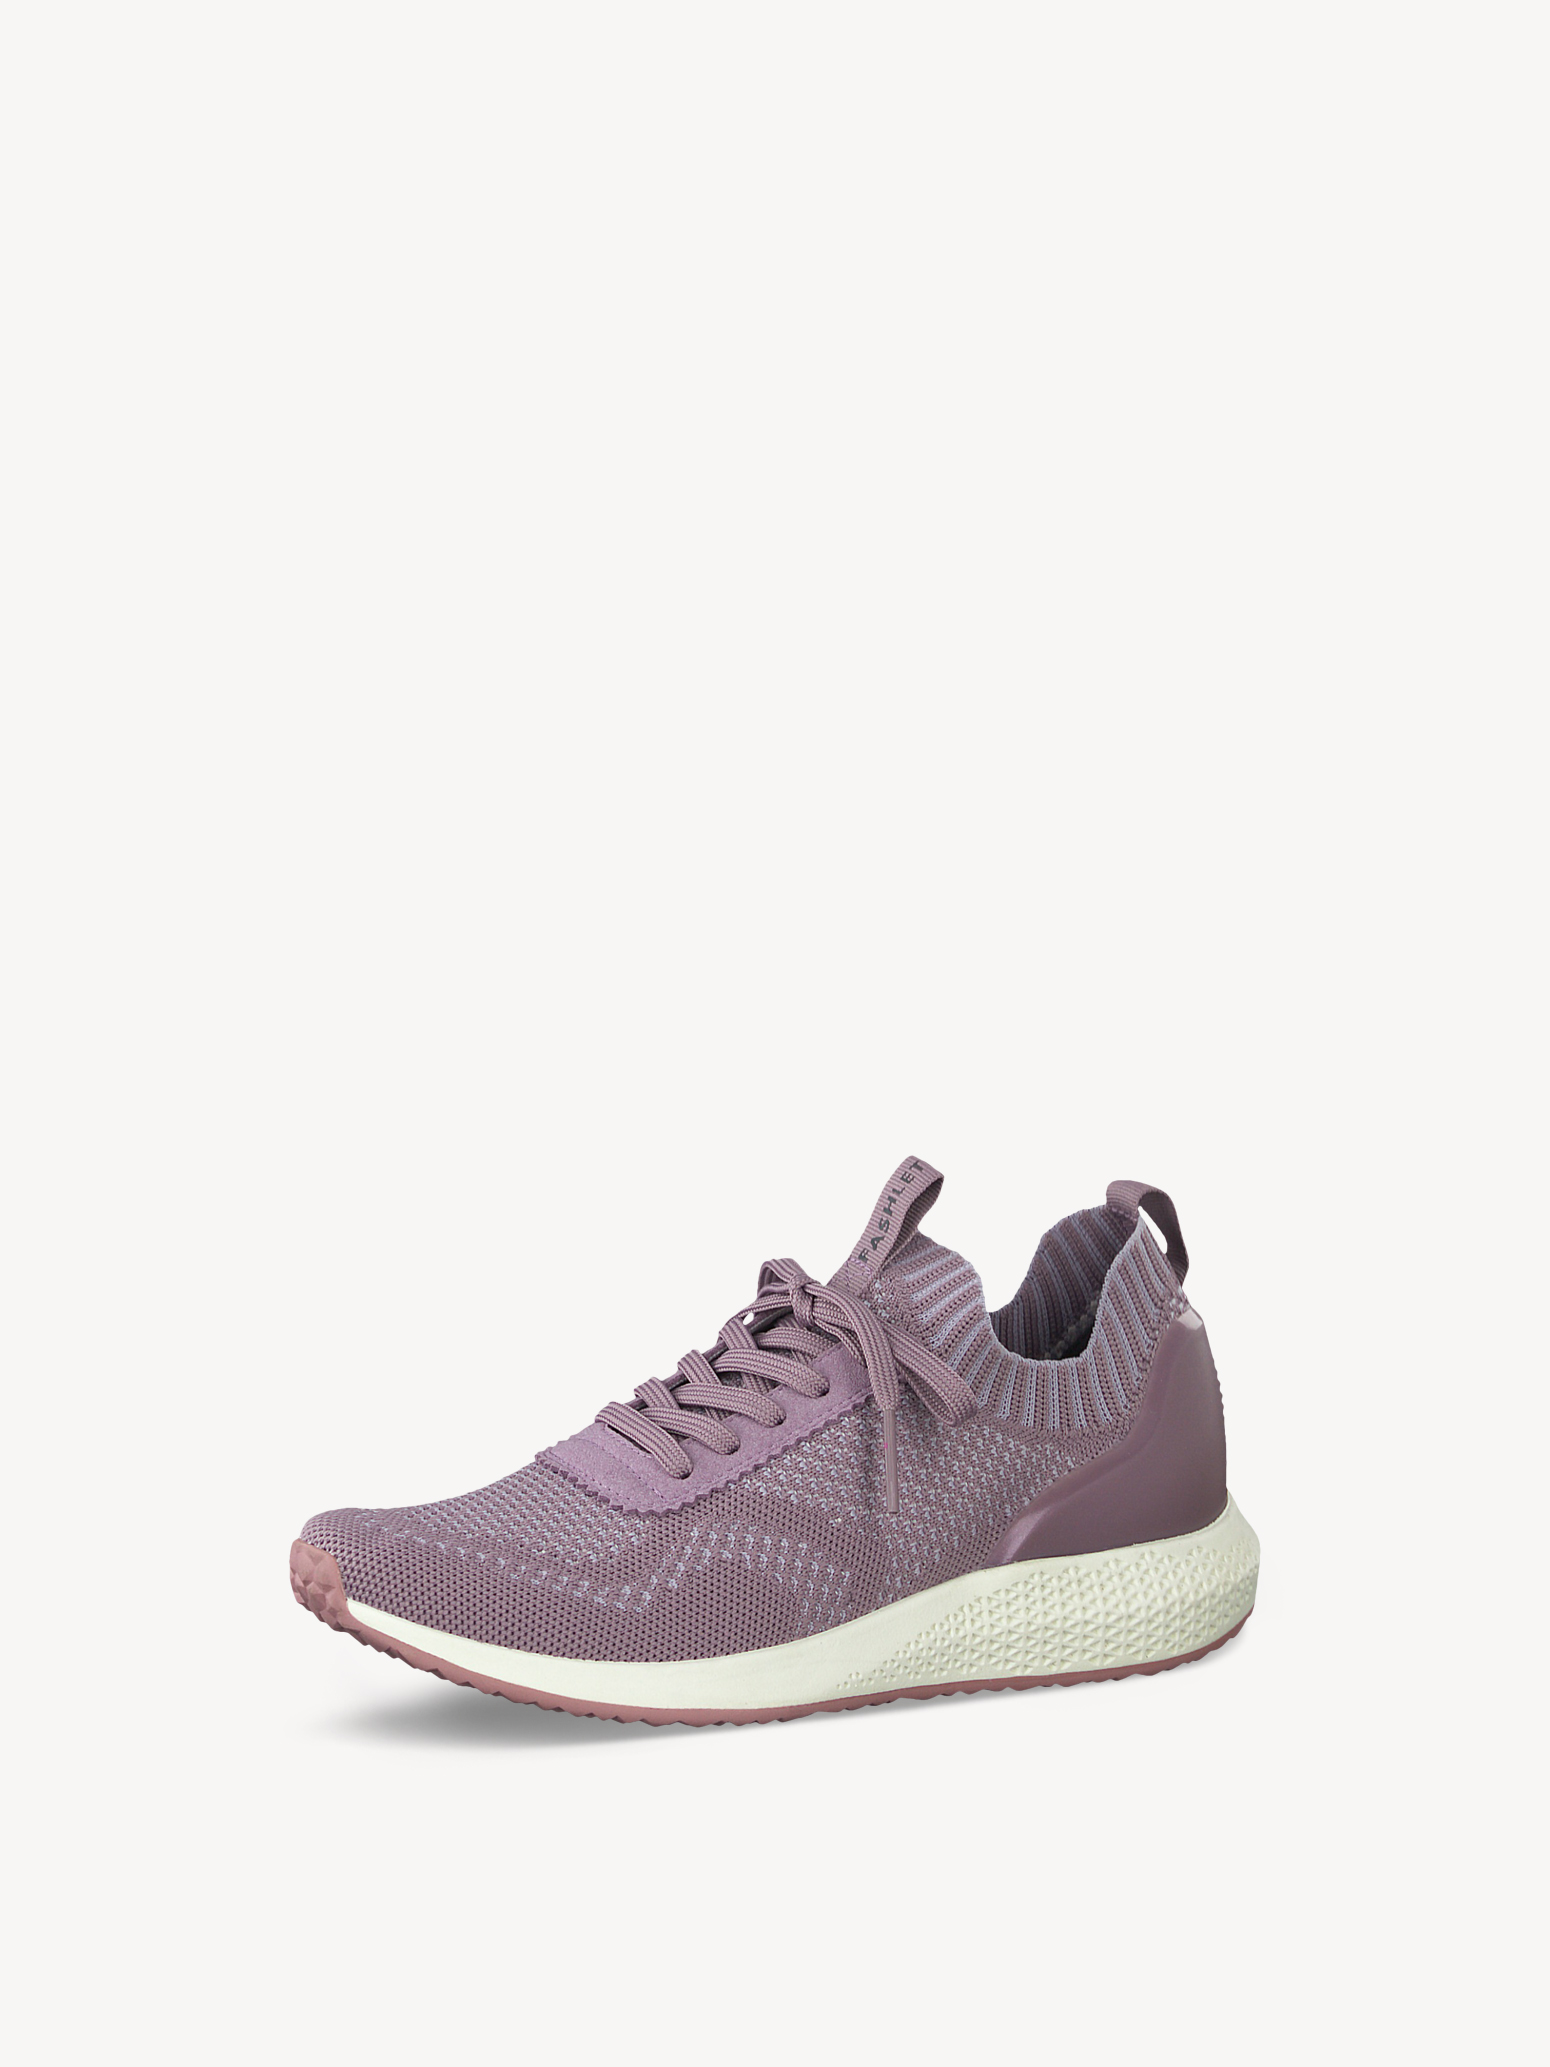 Ботинки на шнурках женские 5 AW20 (фиолетовый) - изображение №1